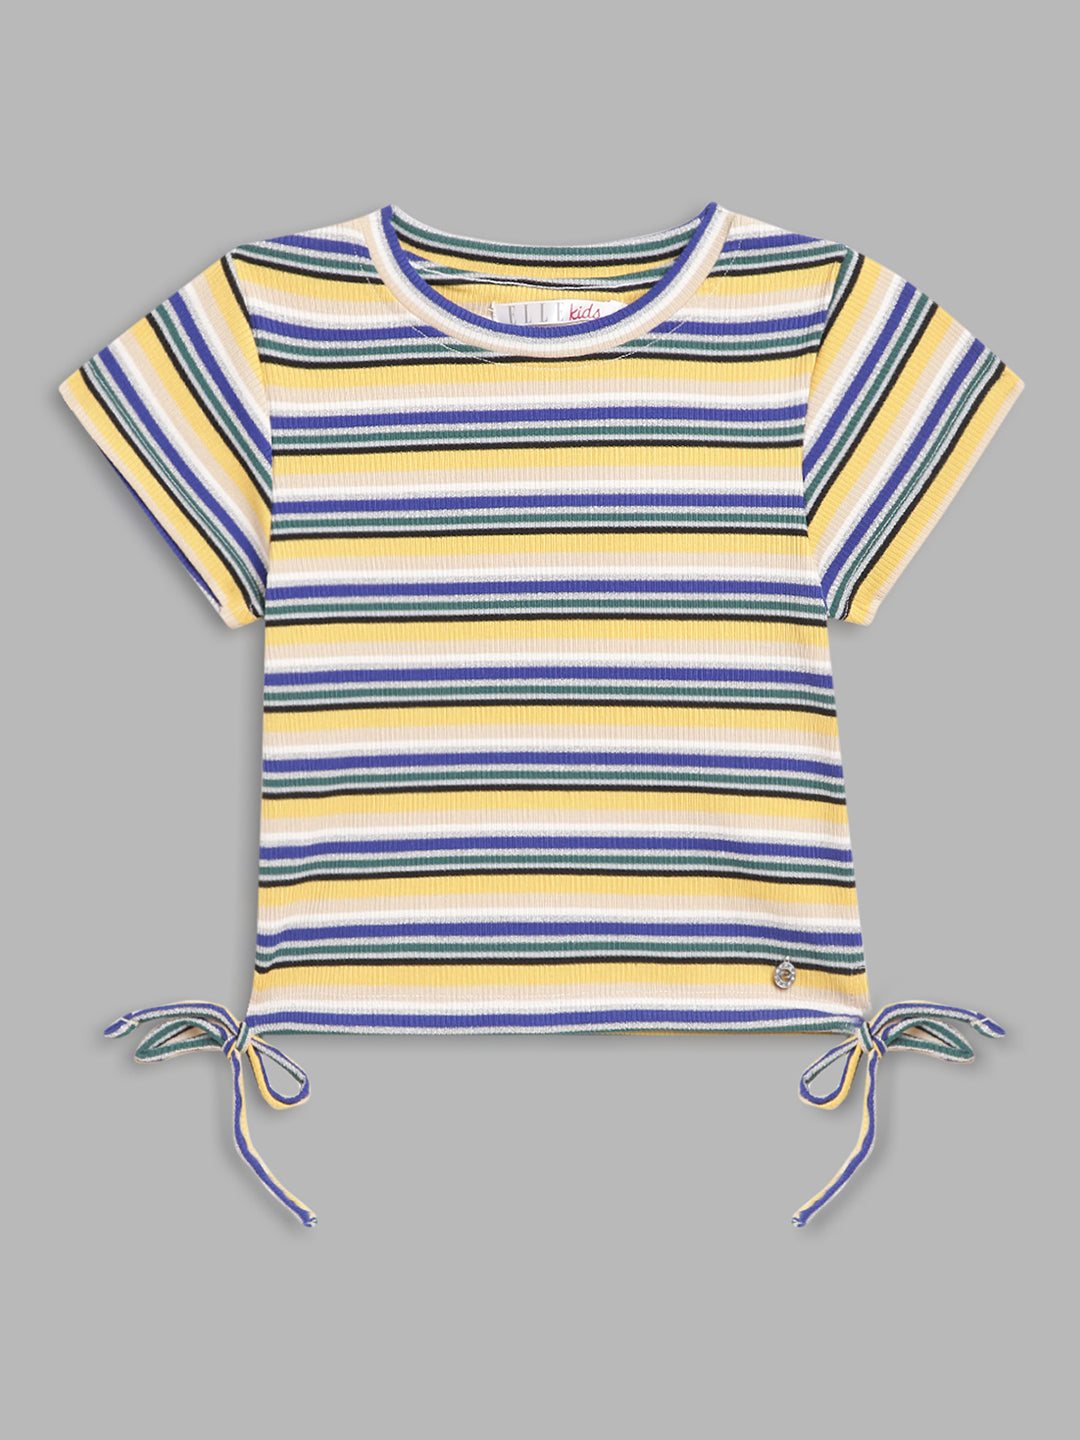 Elle Kids Girls Multi Striped Round Neck Tshirt